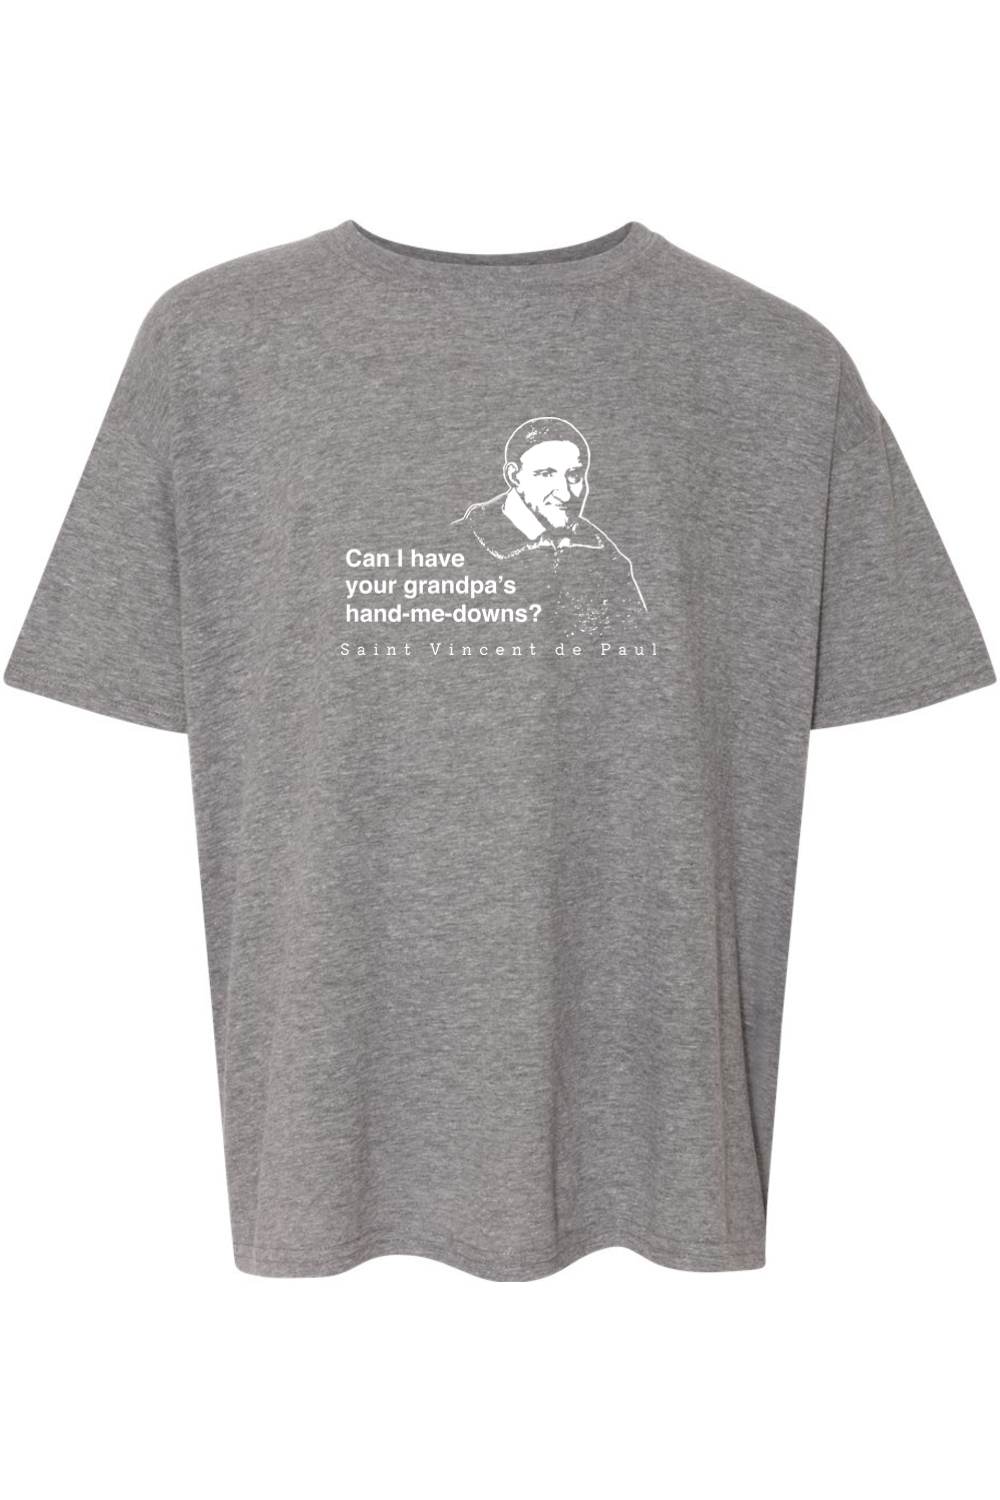 Grandpa's Hand-me-downs - St Vincent de Paul Youth T-Shirt